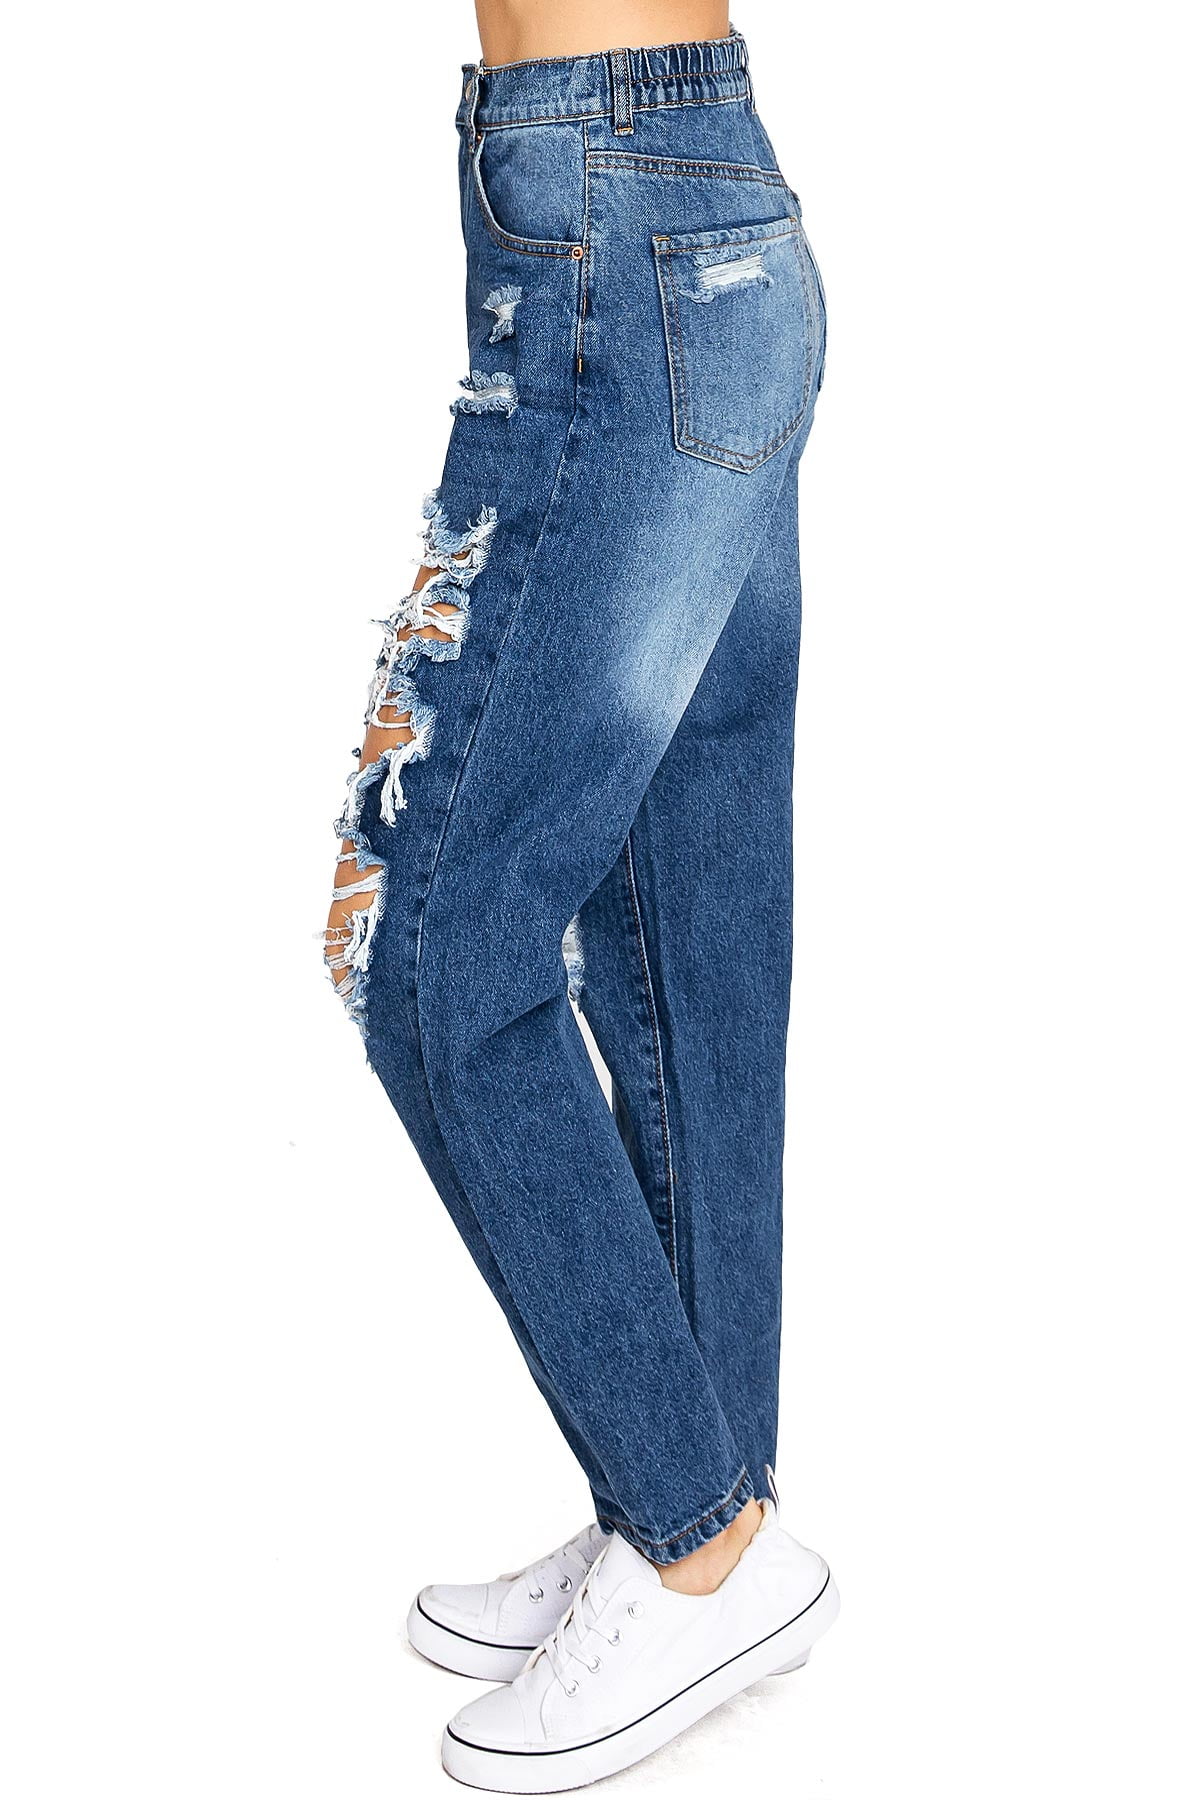 Wax Jeans Women's Juniors High Waist Light Distressing Skinny Jeans - 90600